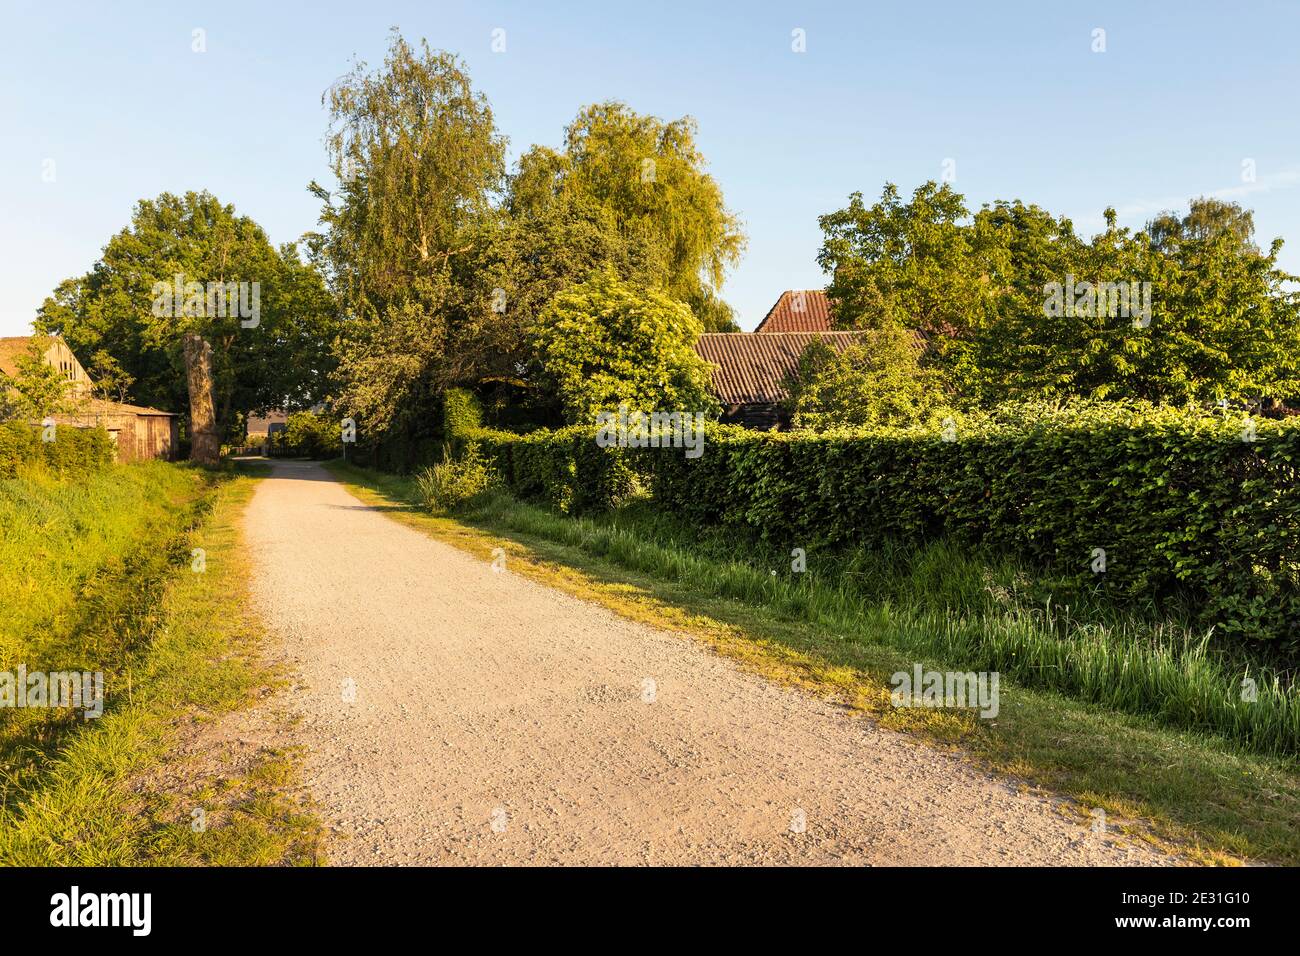 Ein Wanderweg in Eersel, einer ländlichen Gegend in den Niederlanden, umgeben von Bäumen und viel Grün. Aufgenommen an einem sonnigen Tag während des Sonnenuntergangs, wodurch ein idyllischer Scen entsteht Stockfoto